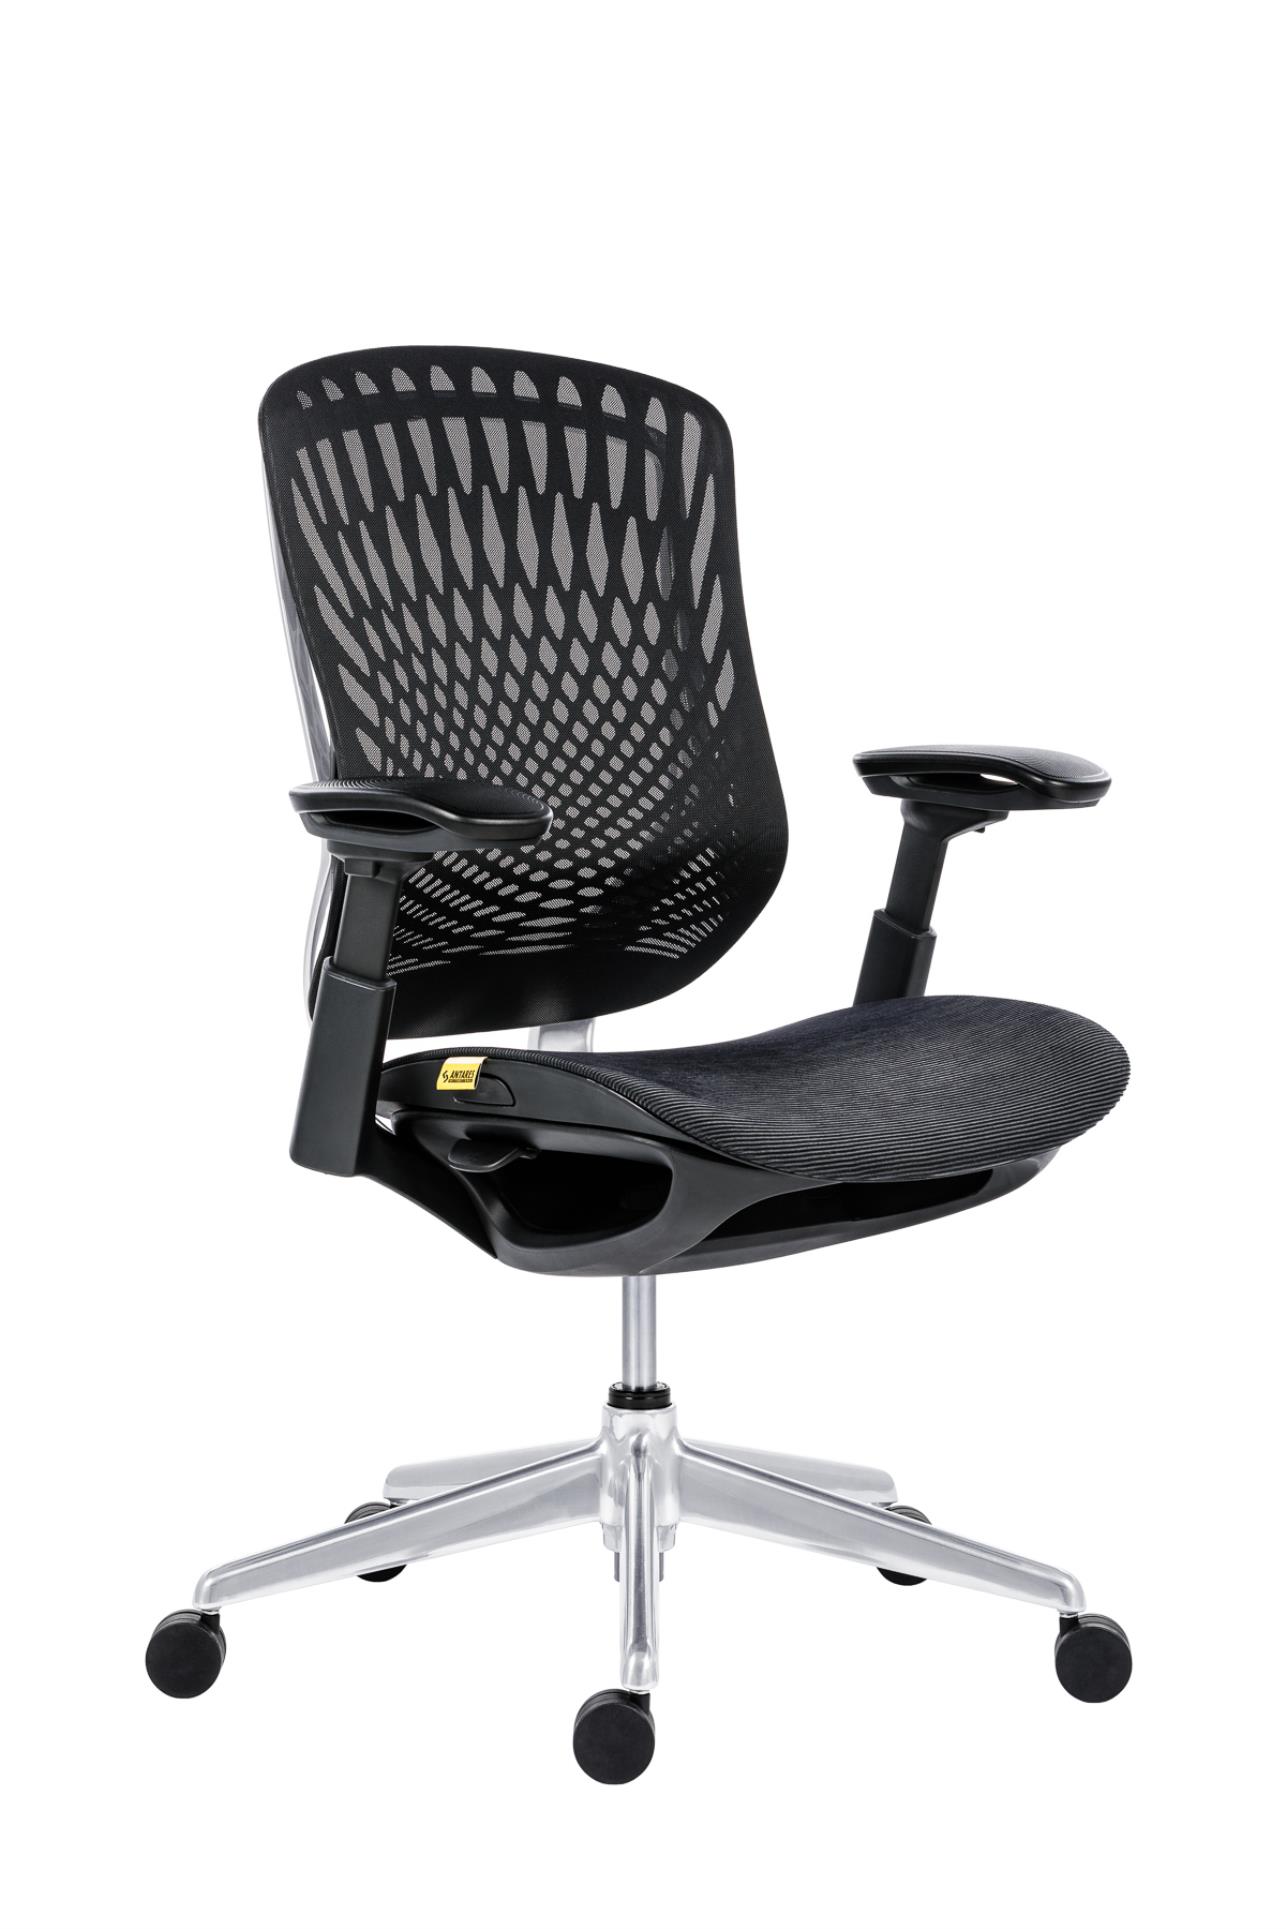 Antares Kancelářská židle BAT NET PERF - synchro, černá